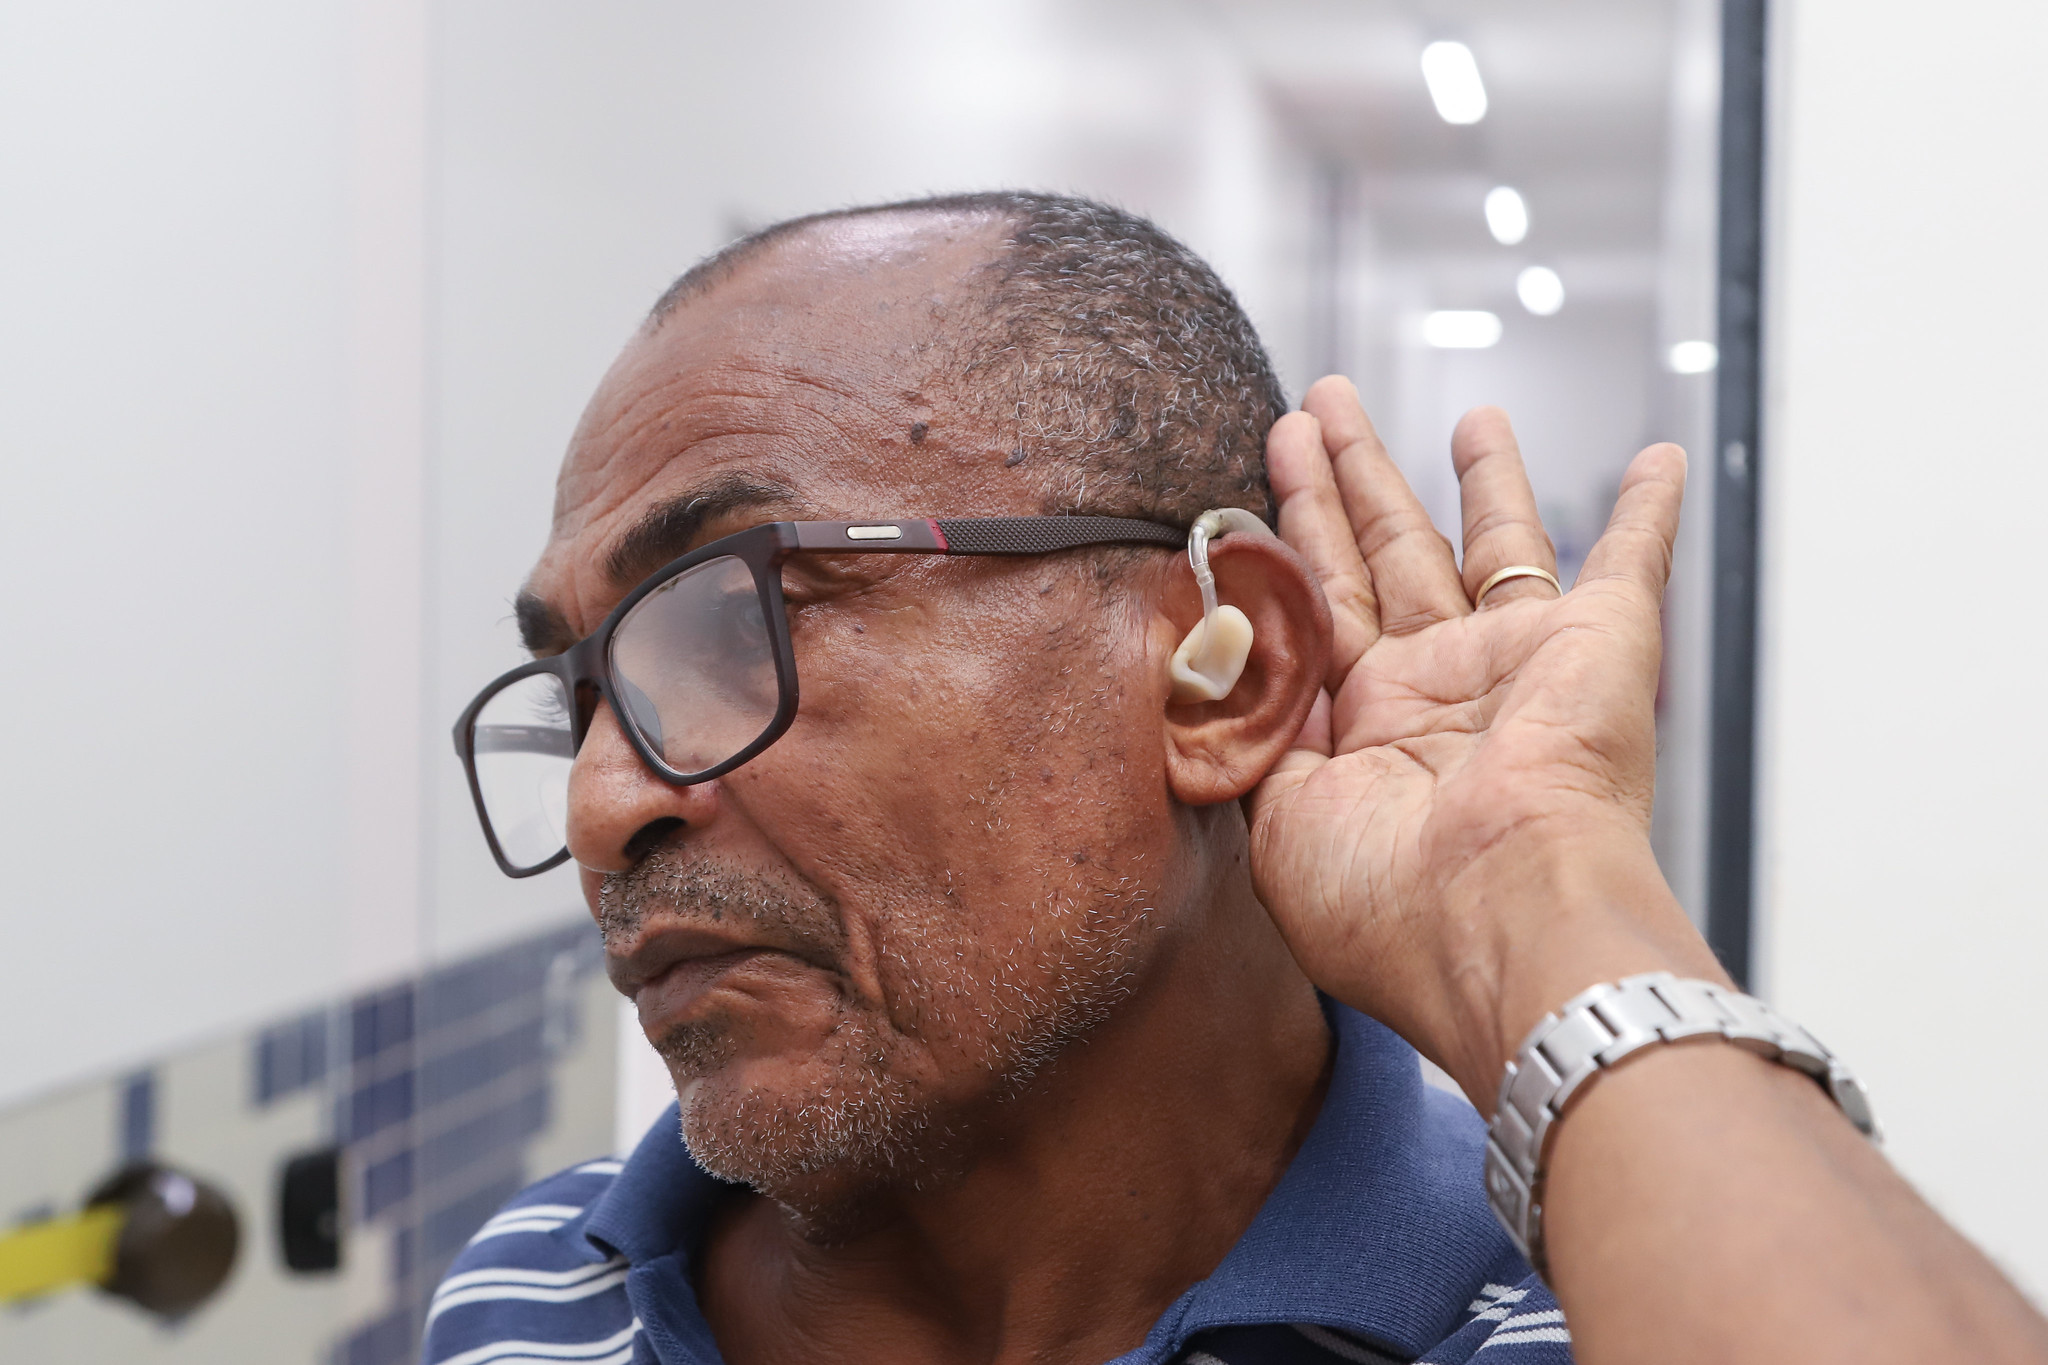 Prefeitura entrega 120 aparelhos auditivos para a popula��o de Lauro de Freitas nesta sexta-feira (23)